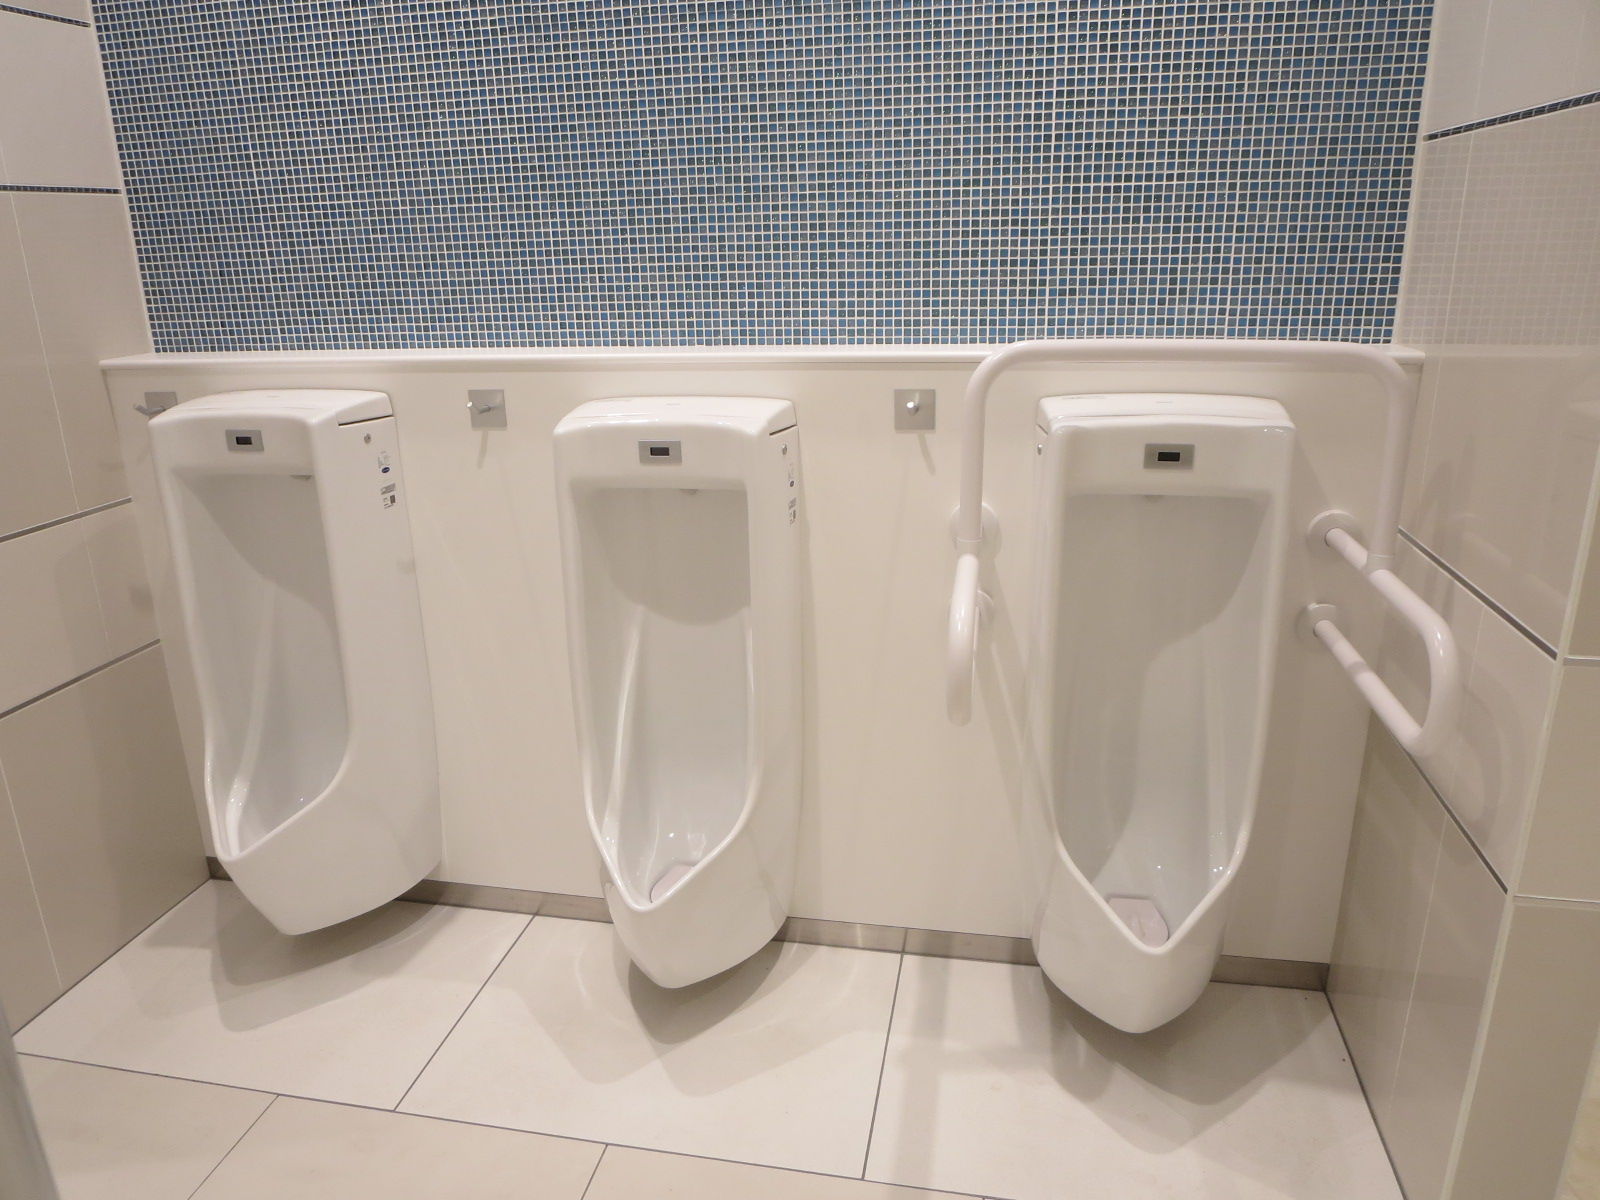 トイレ設備調査日記atosatu 札幌ステラプレイス6階ステラダイニング街男性用トイレ改修後。